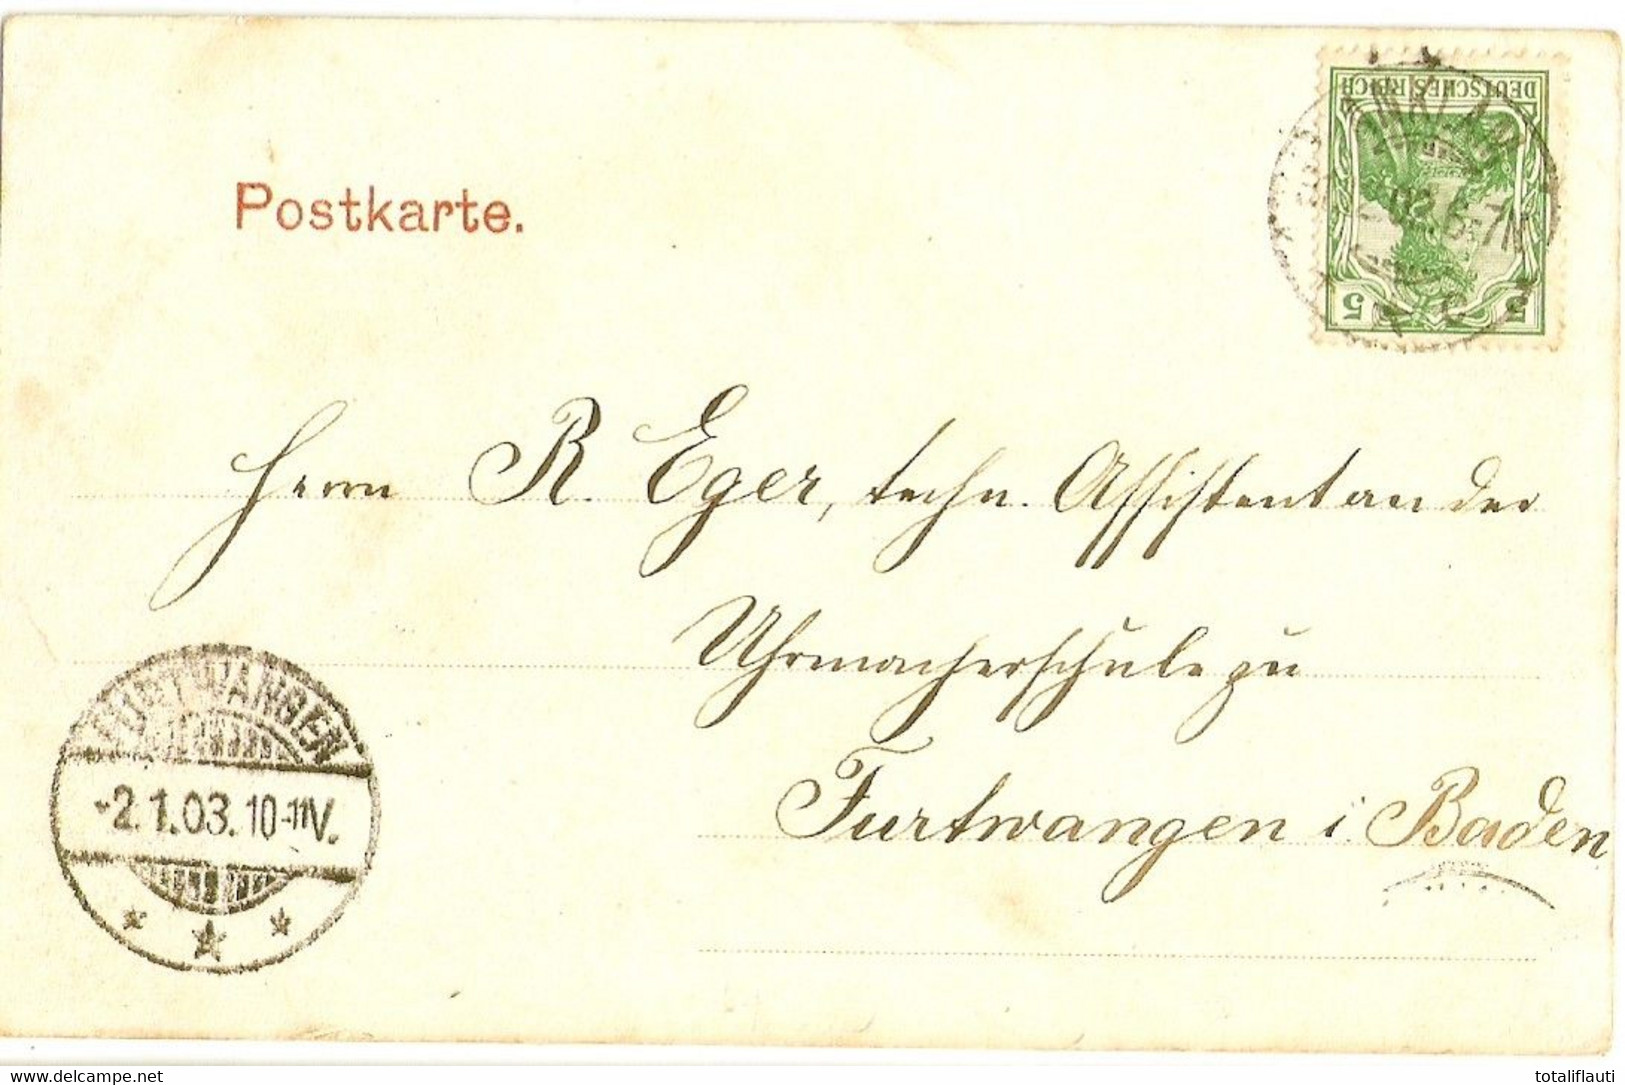 ANKLAM Markt Wein & Kaffee Gemischtwaren Pferde Ackerwagen Kutschen Gelaufen 31.12.1903 - Anklam